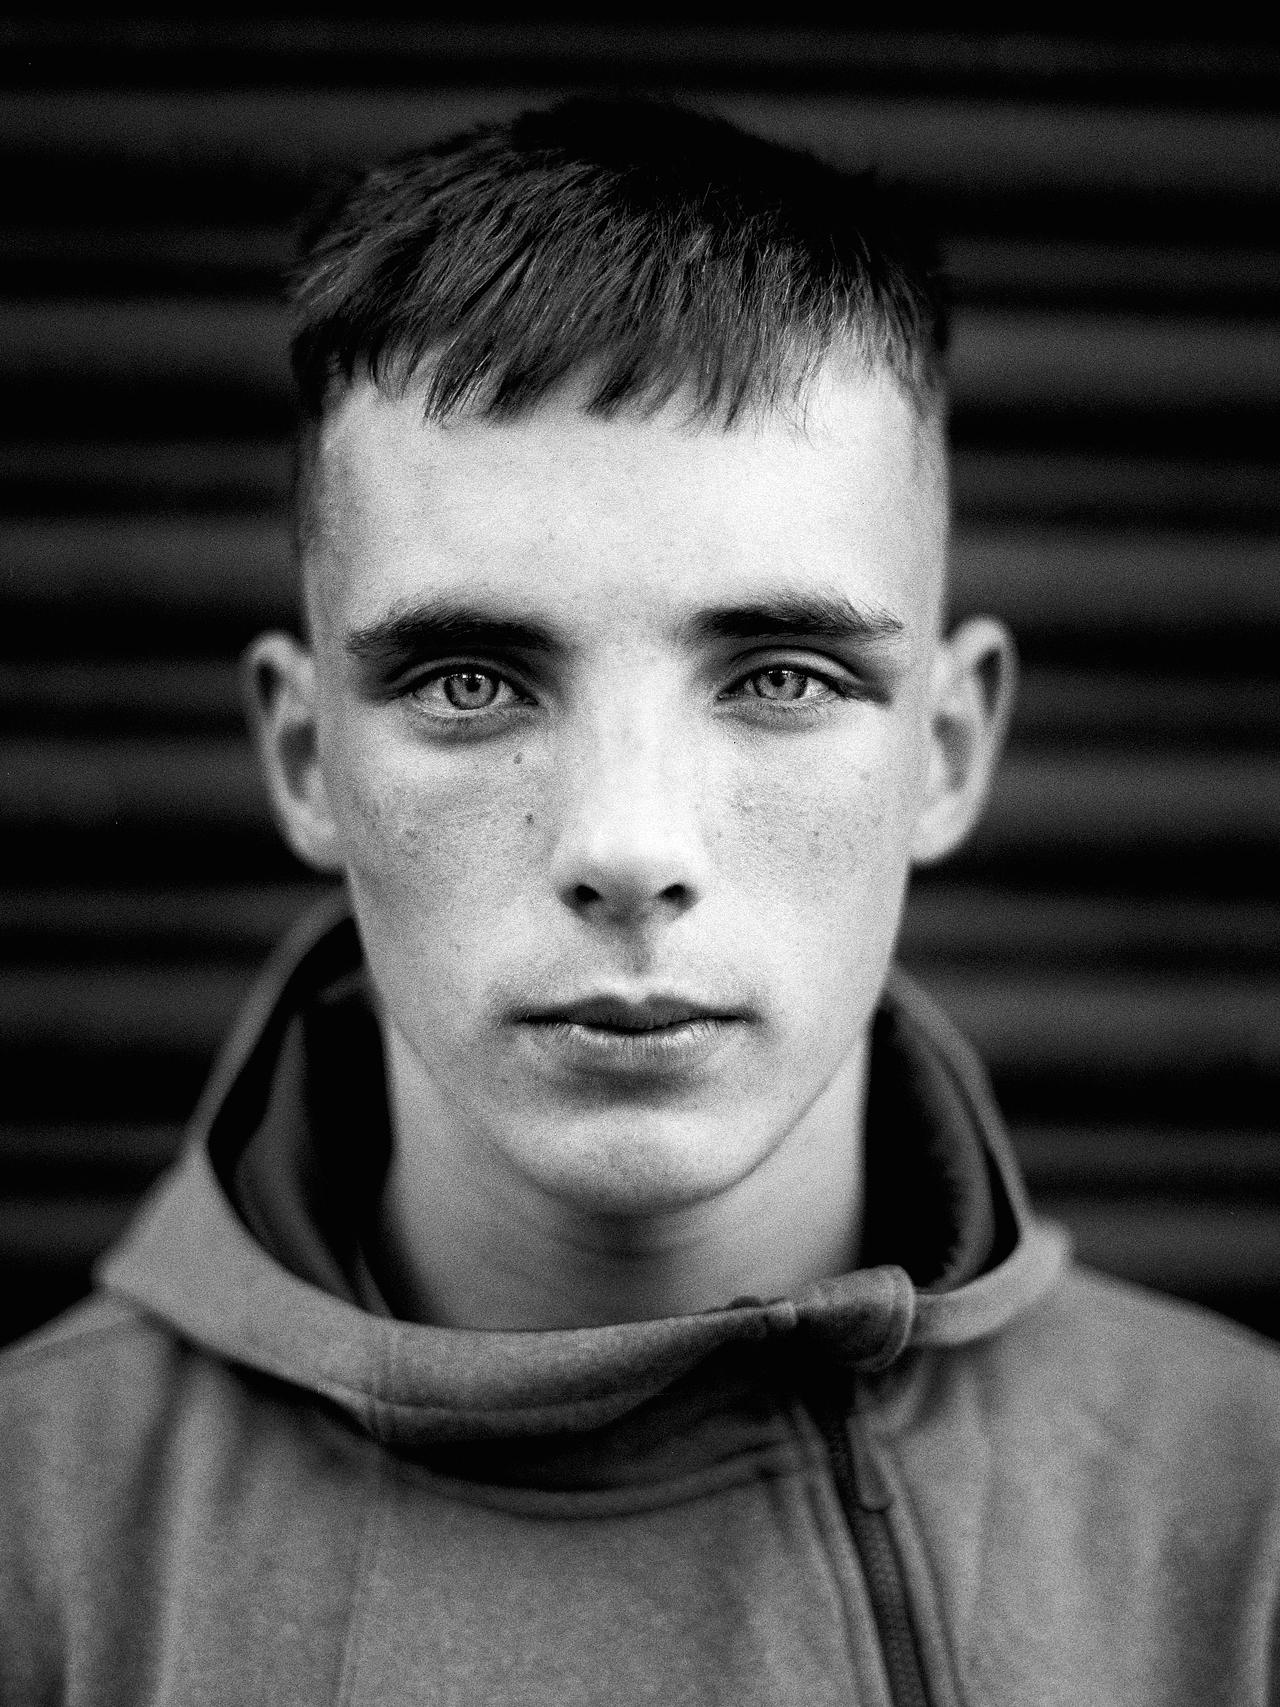 Toby Binder - Wee Muckers – Youth of Belfast - Felix Schoeller Photoaward